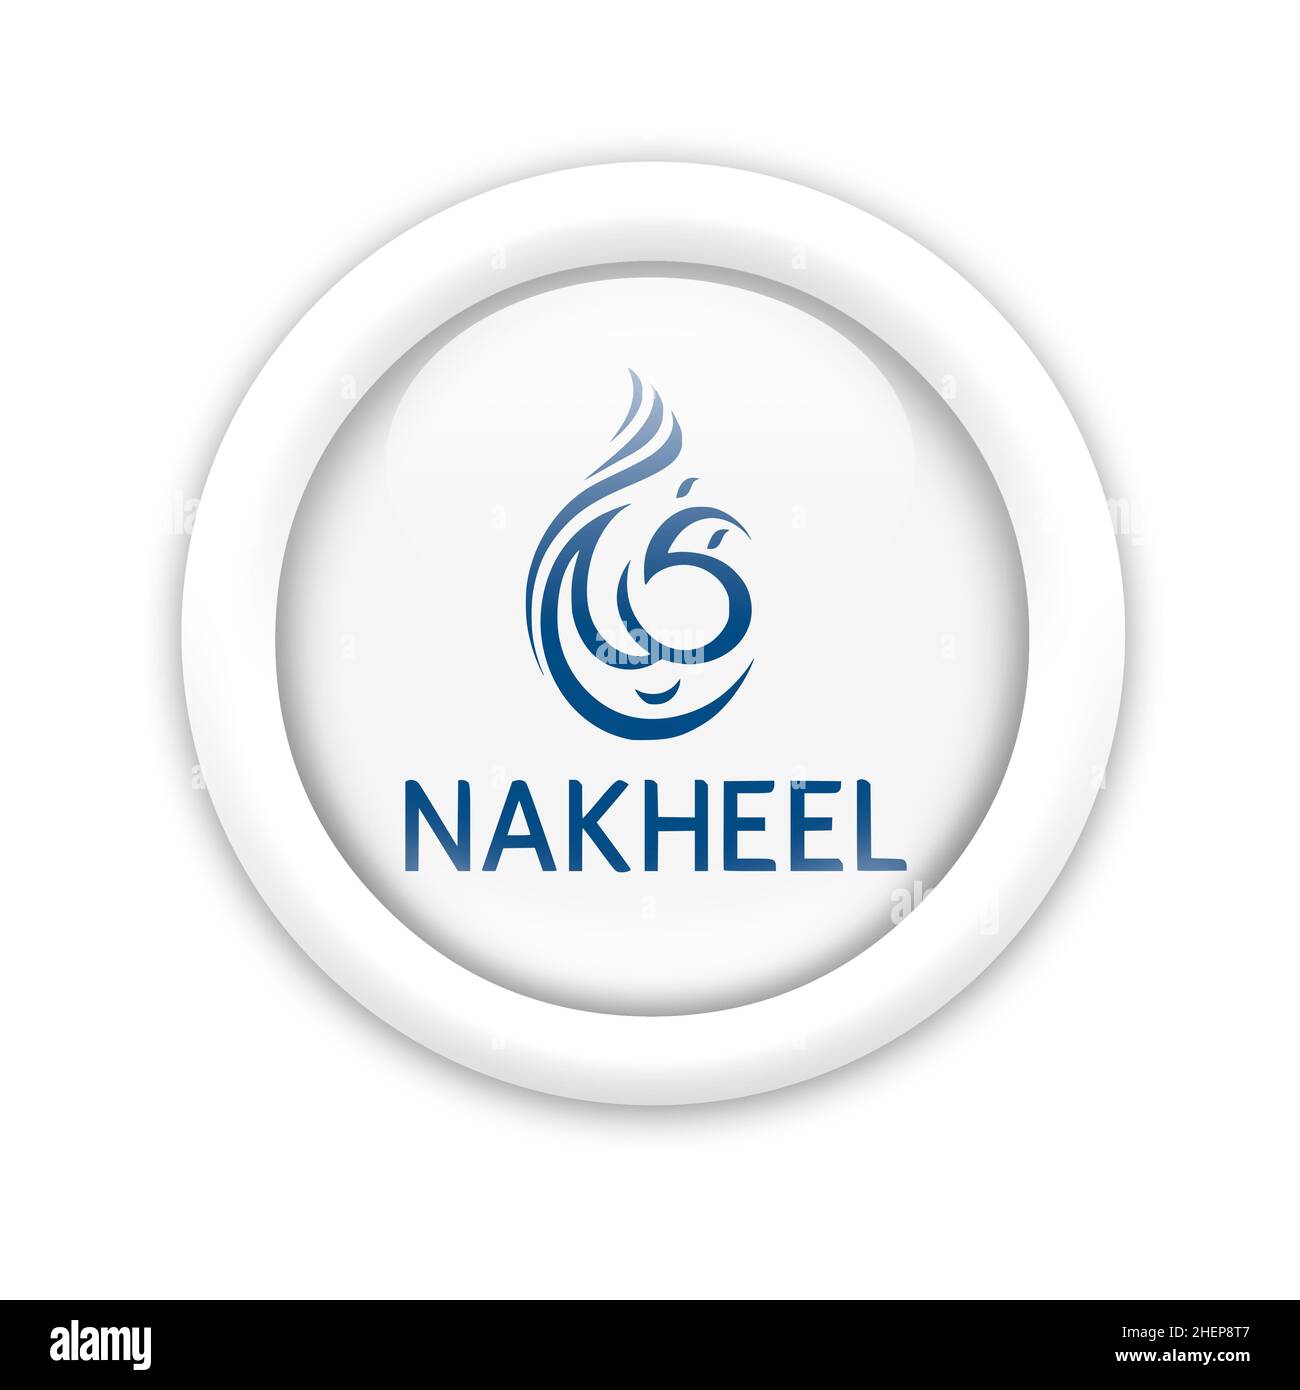 Nakheel logo Stock Photo